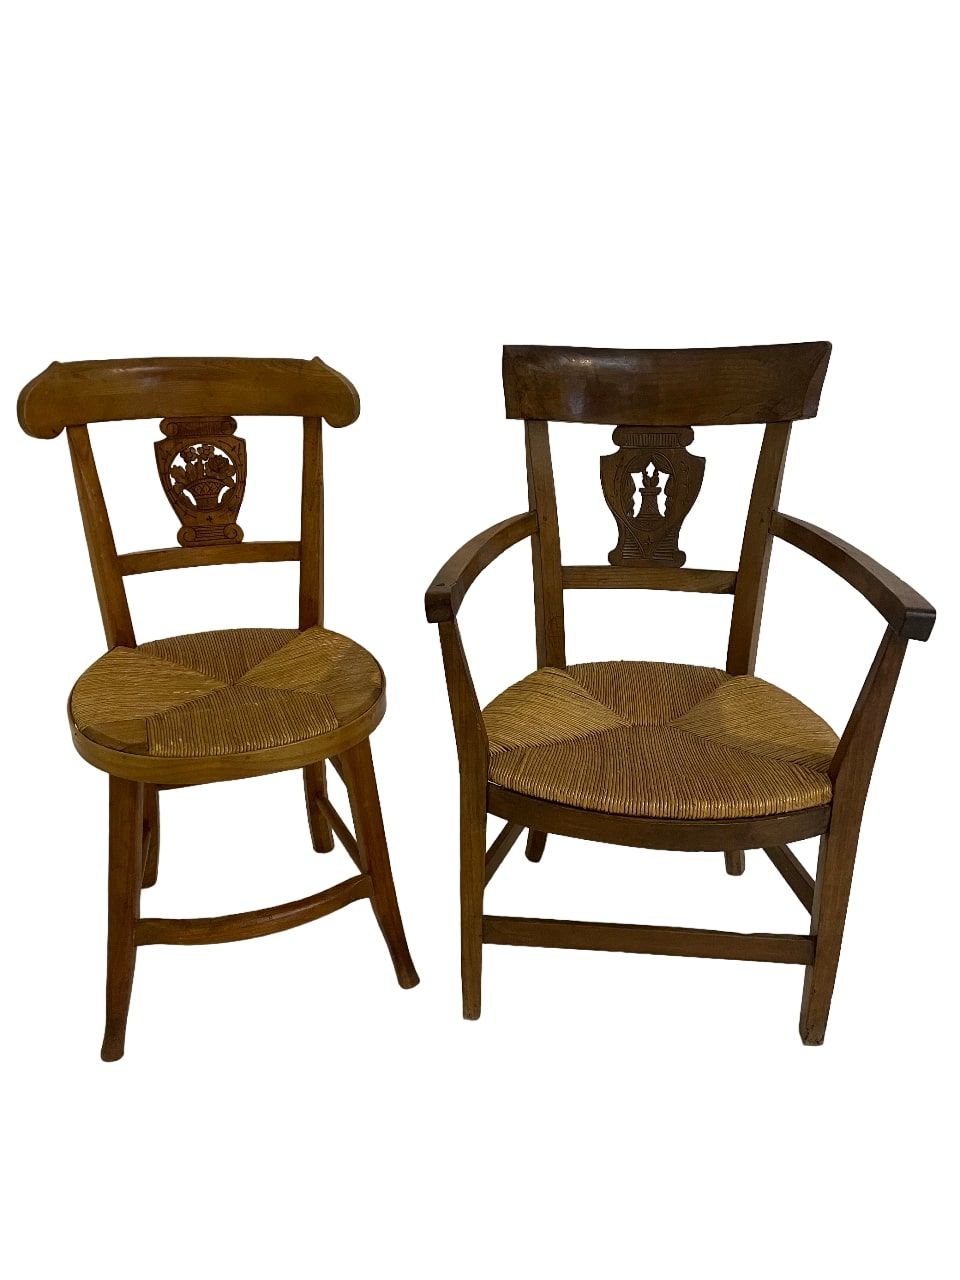 Null Un sillón y una silla en madera natural, respaldo con medallón tallado.
H: &hellip;